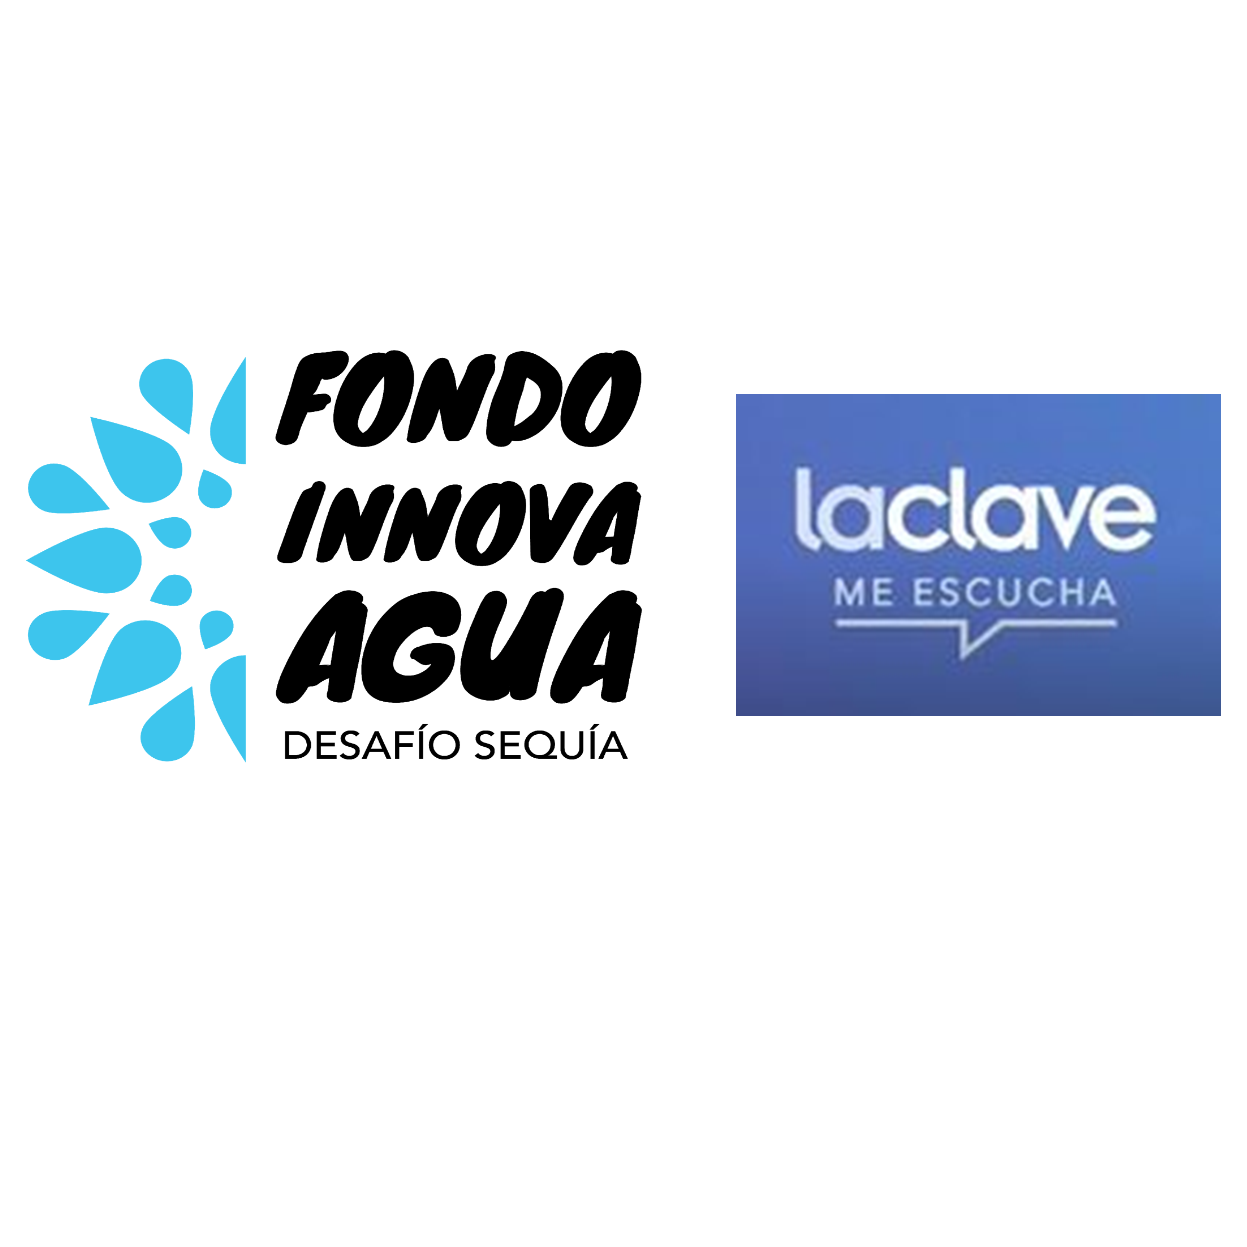 FONDO INNOVA AGUA en Radio La Clave , 9 de diciembre 2020